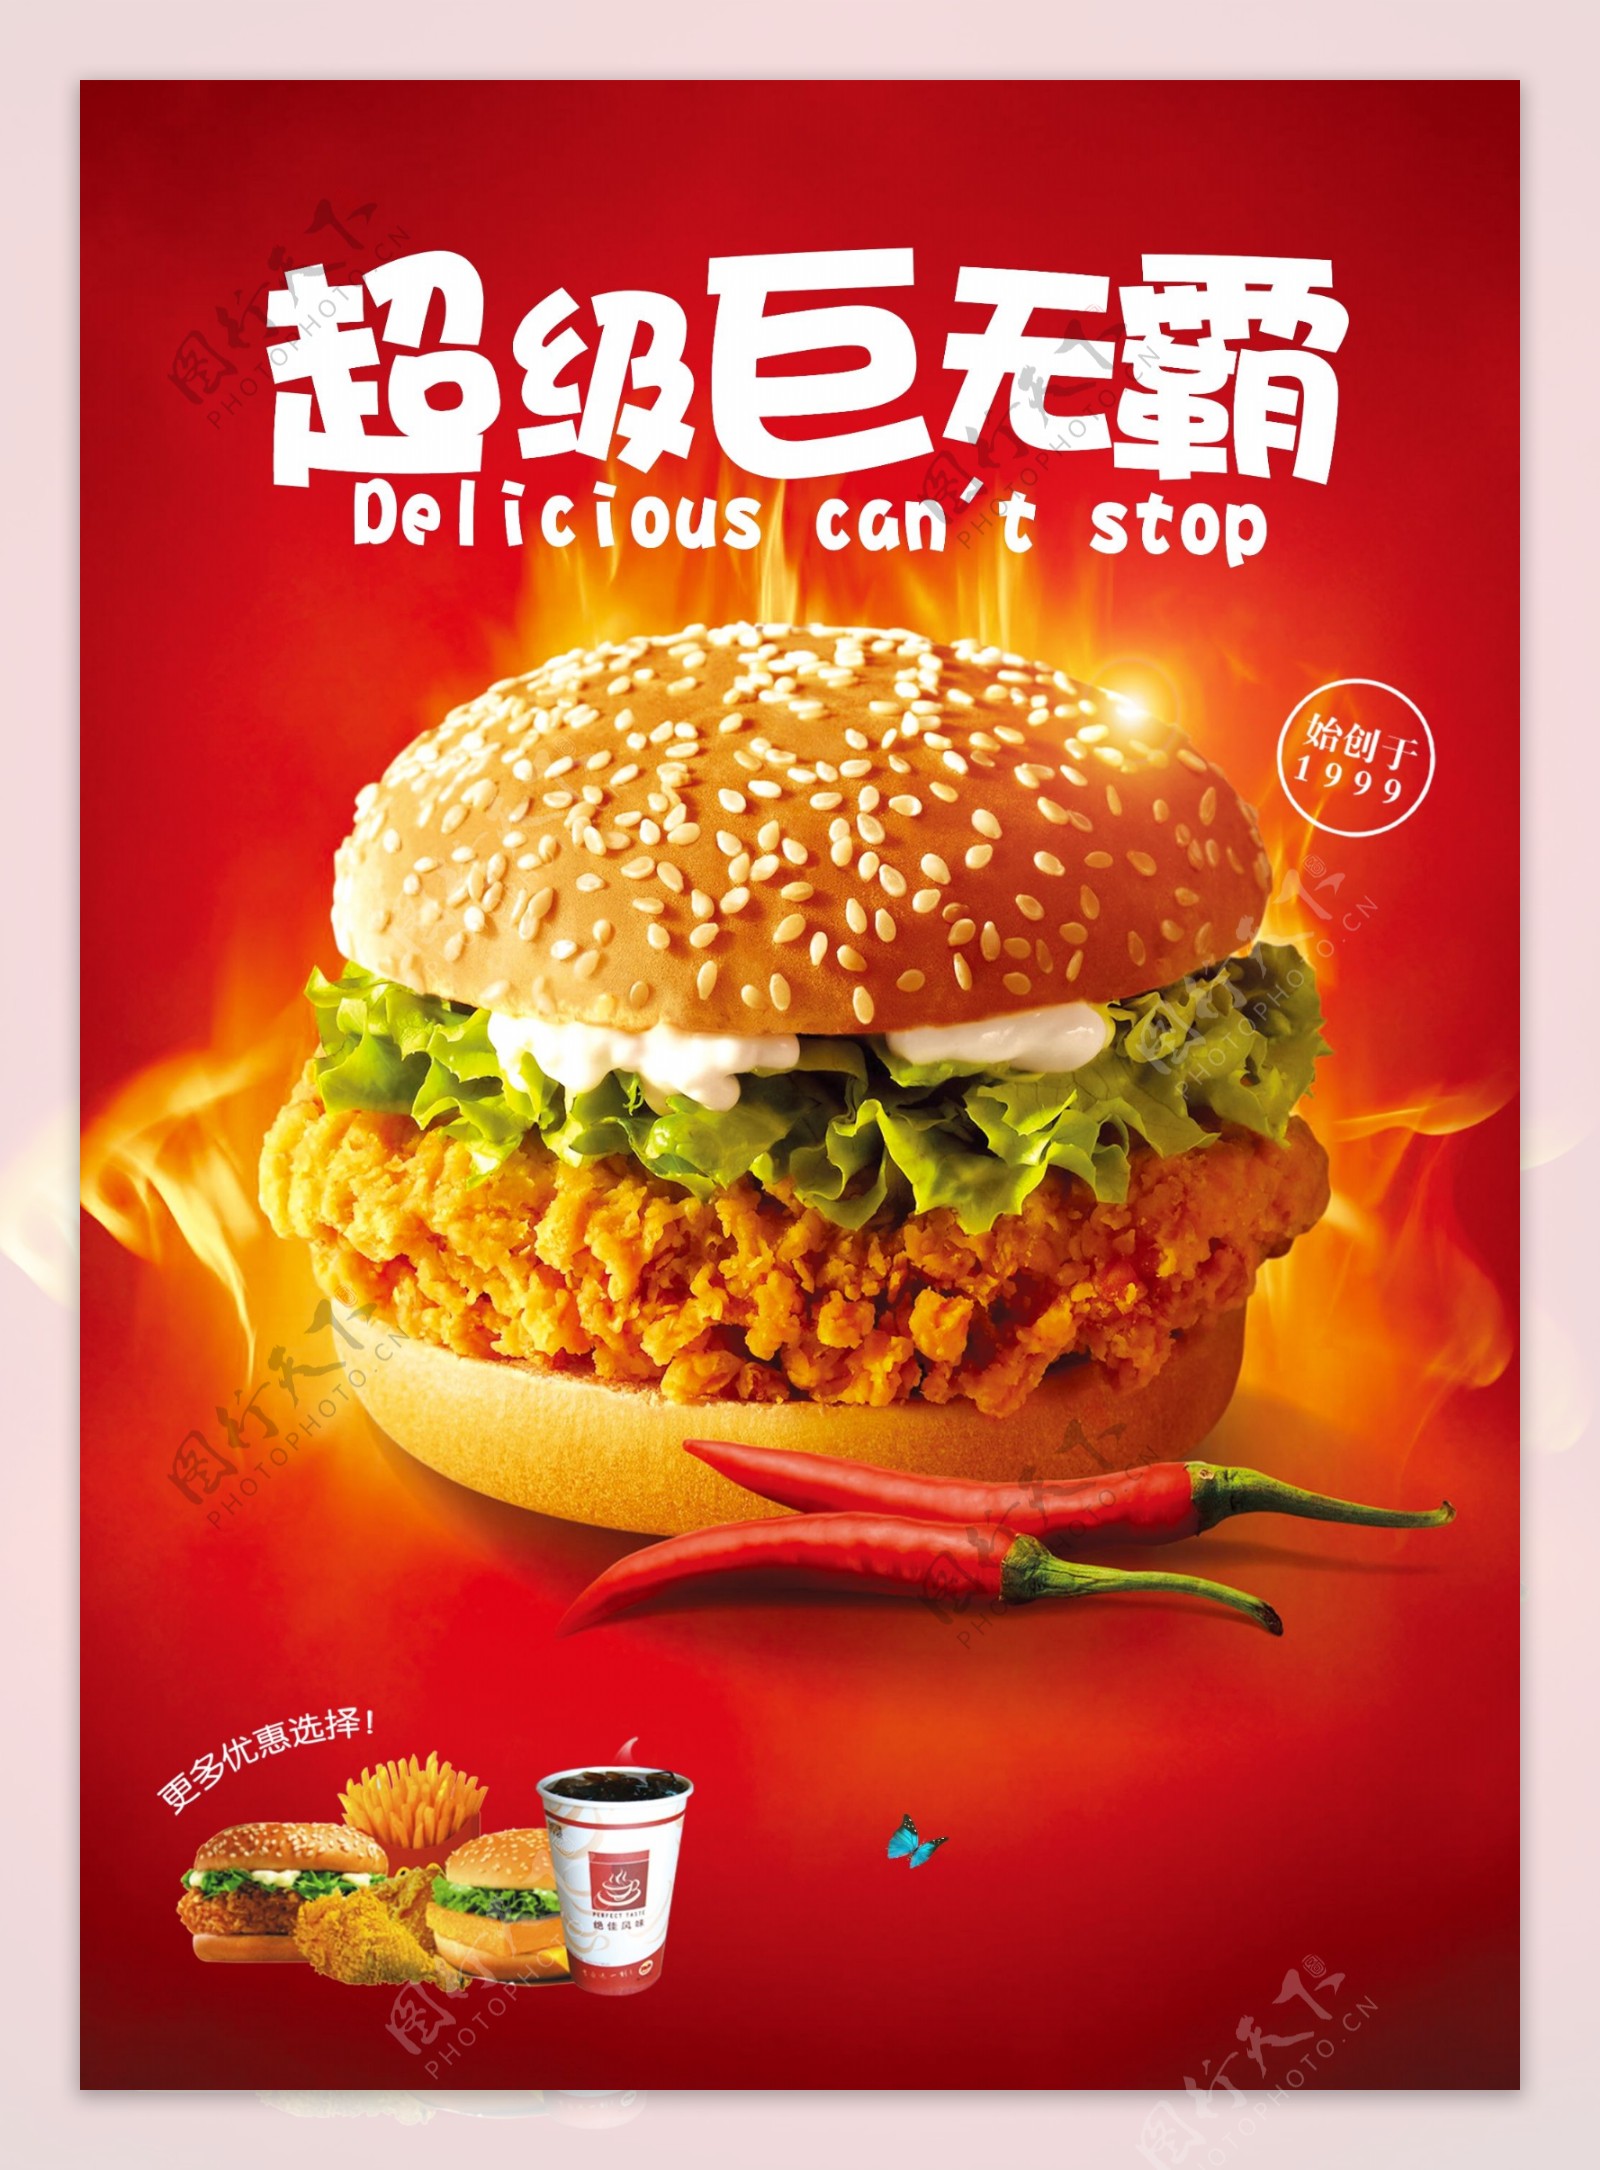 汉堡巨无霸套餐活动优惠促销海报